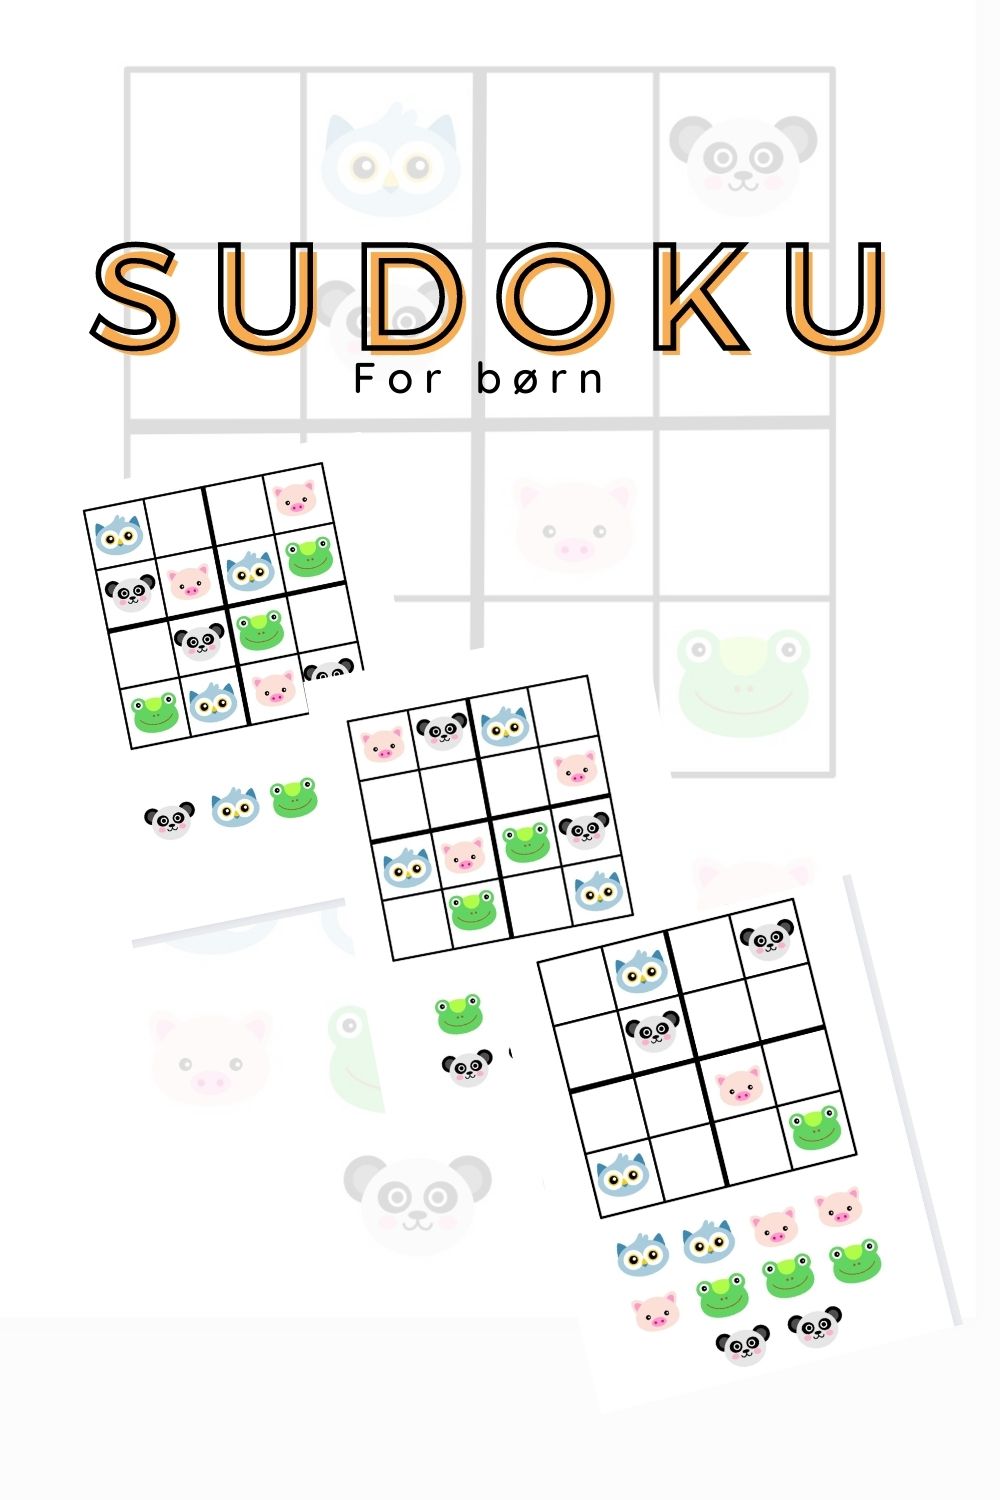 Sudoku for børn med billeder - 4x4 - print selv